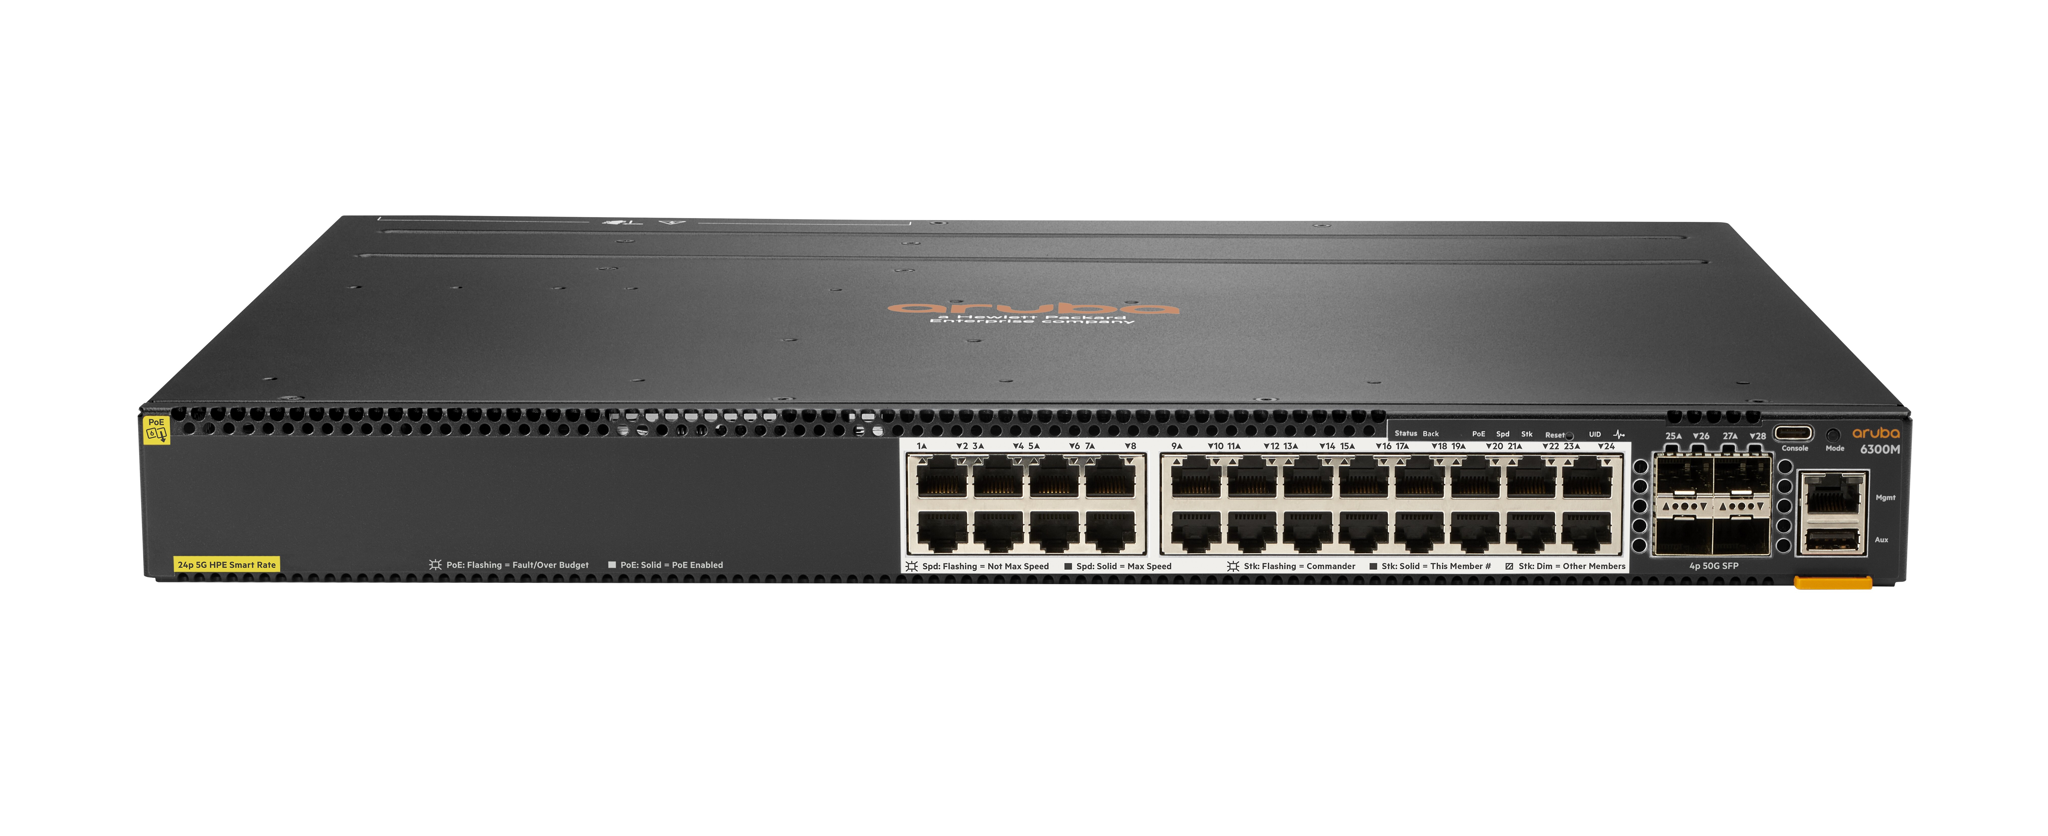 Bild von HPE 6300M - Managed - L3 - Power over Ethernet (PoE) - Rack-Einbau - 1U